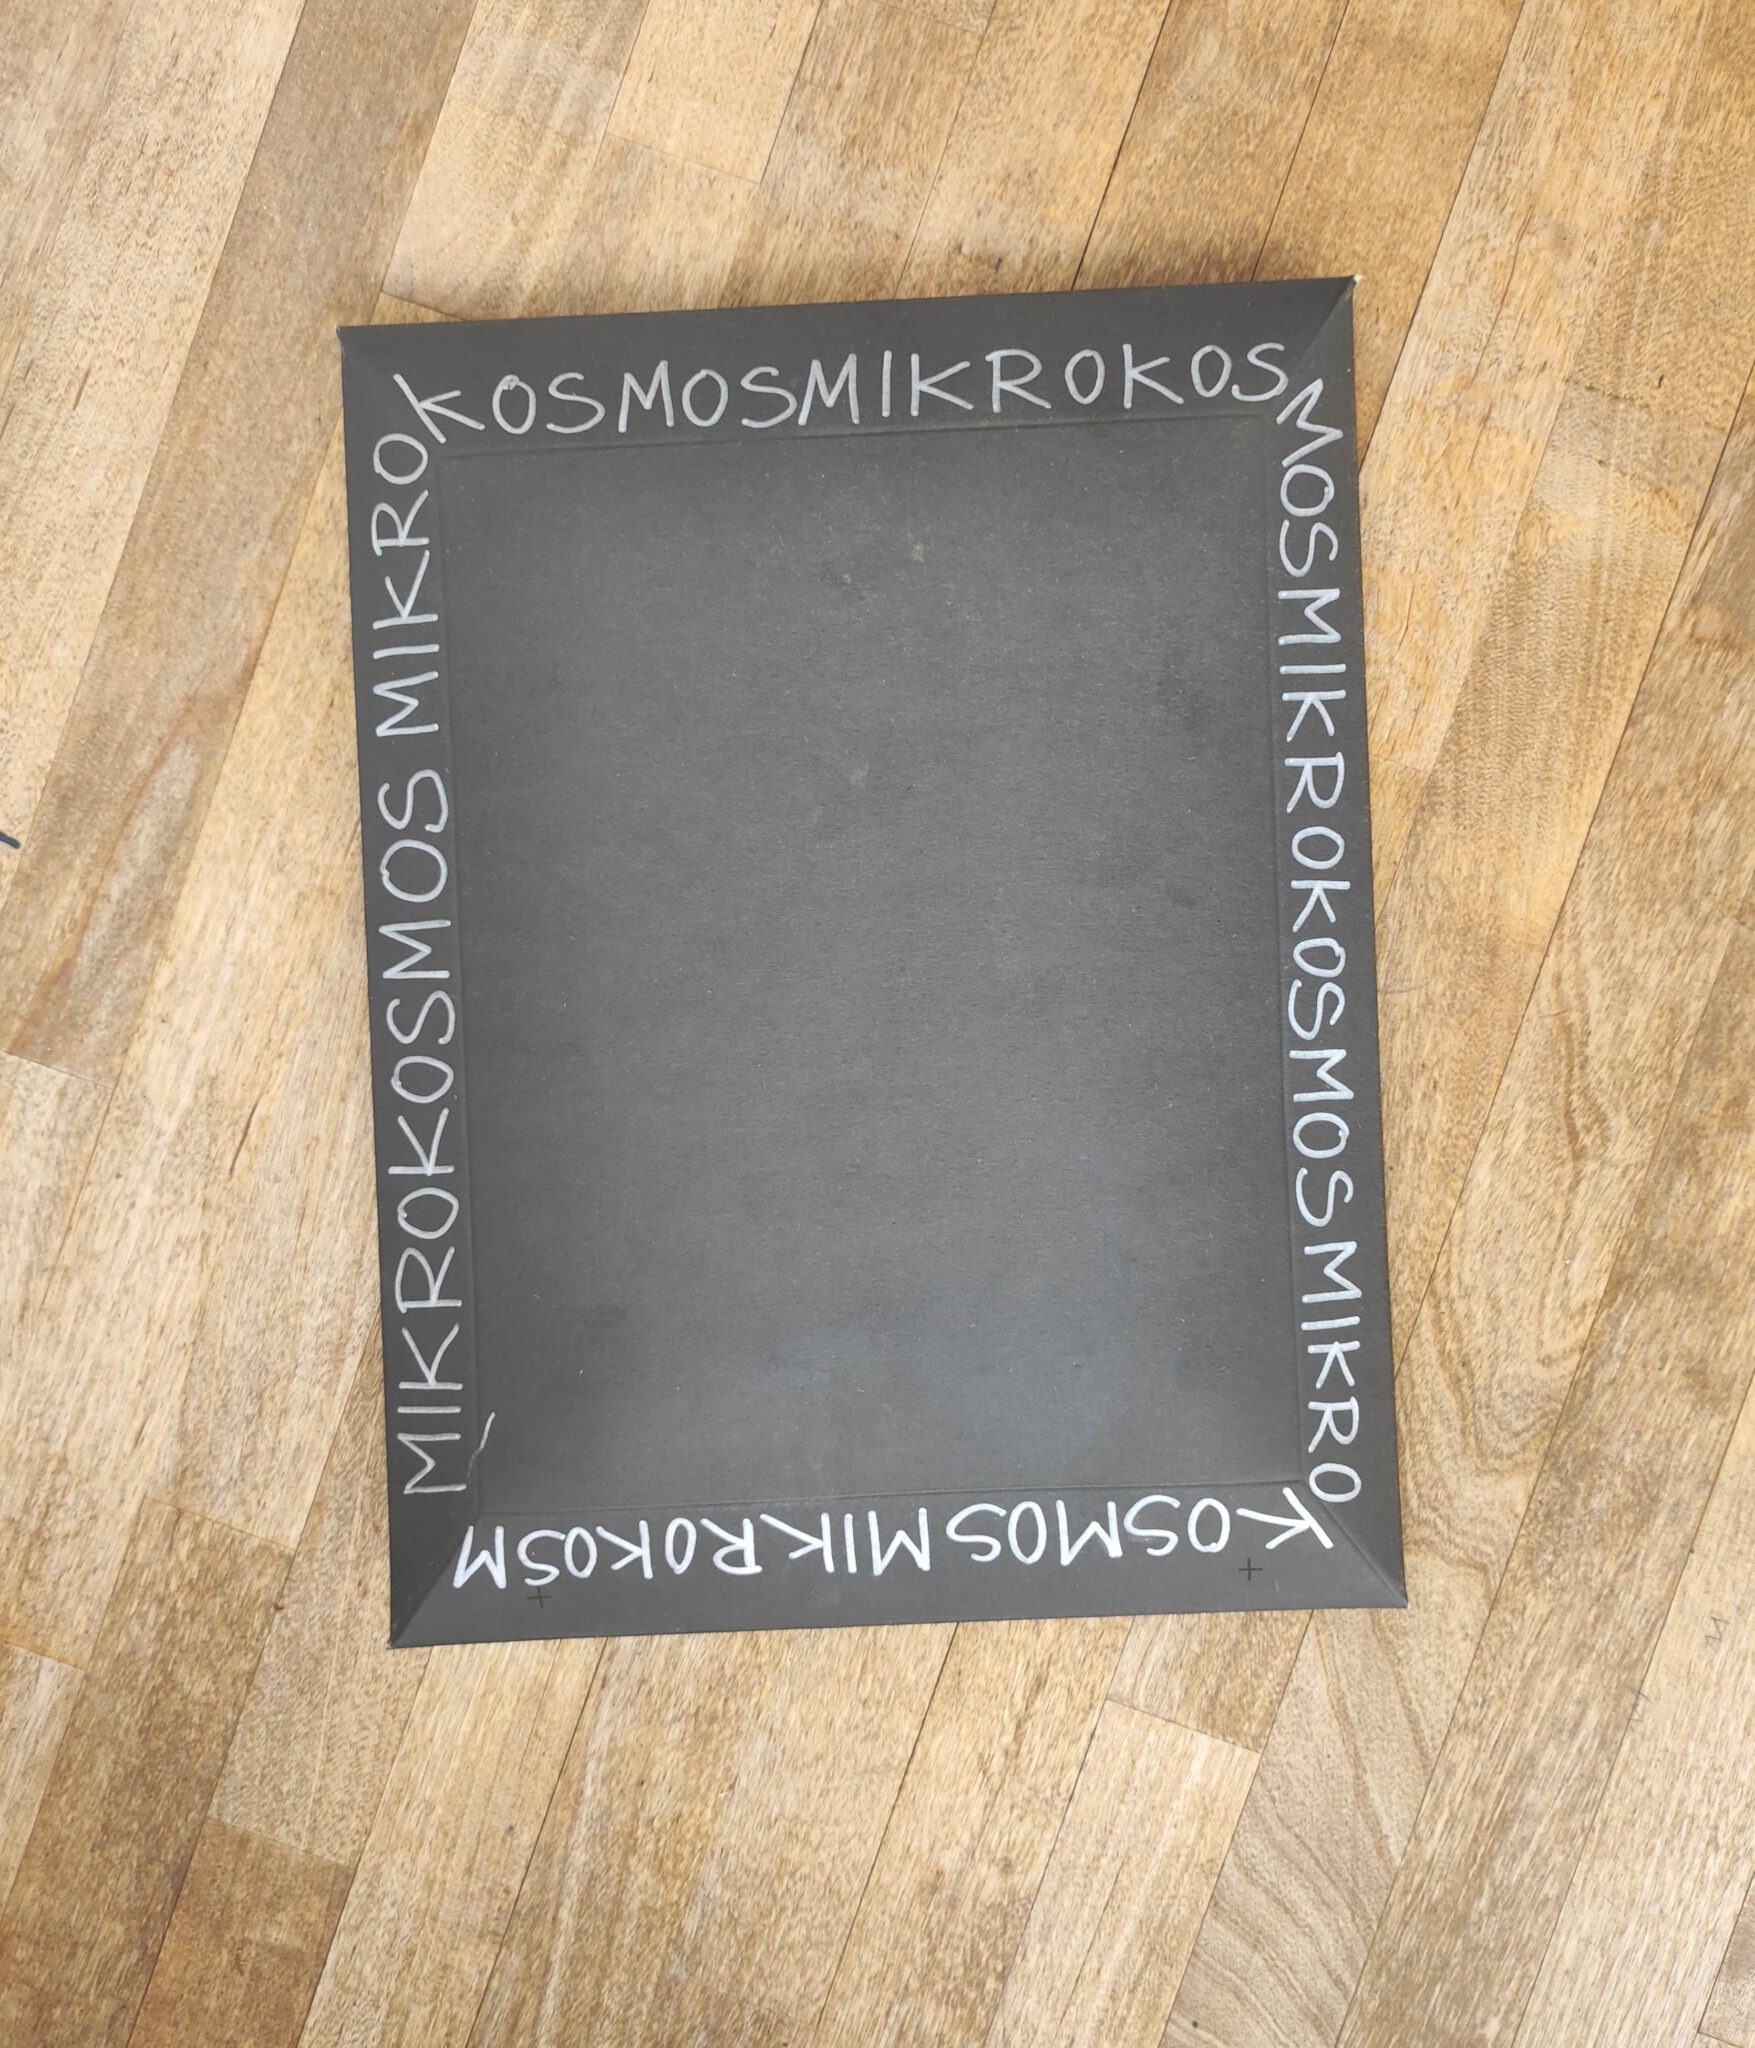 Ein schwarzer Umschkag mit der sich wiederholenden handschriftlichen Aufschrift Mirkokosmos liegt auf einem Holztisch